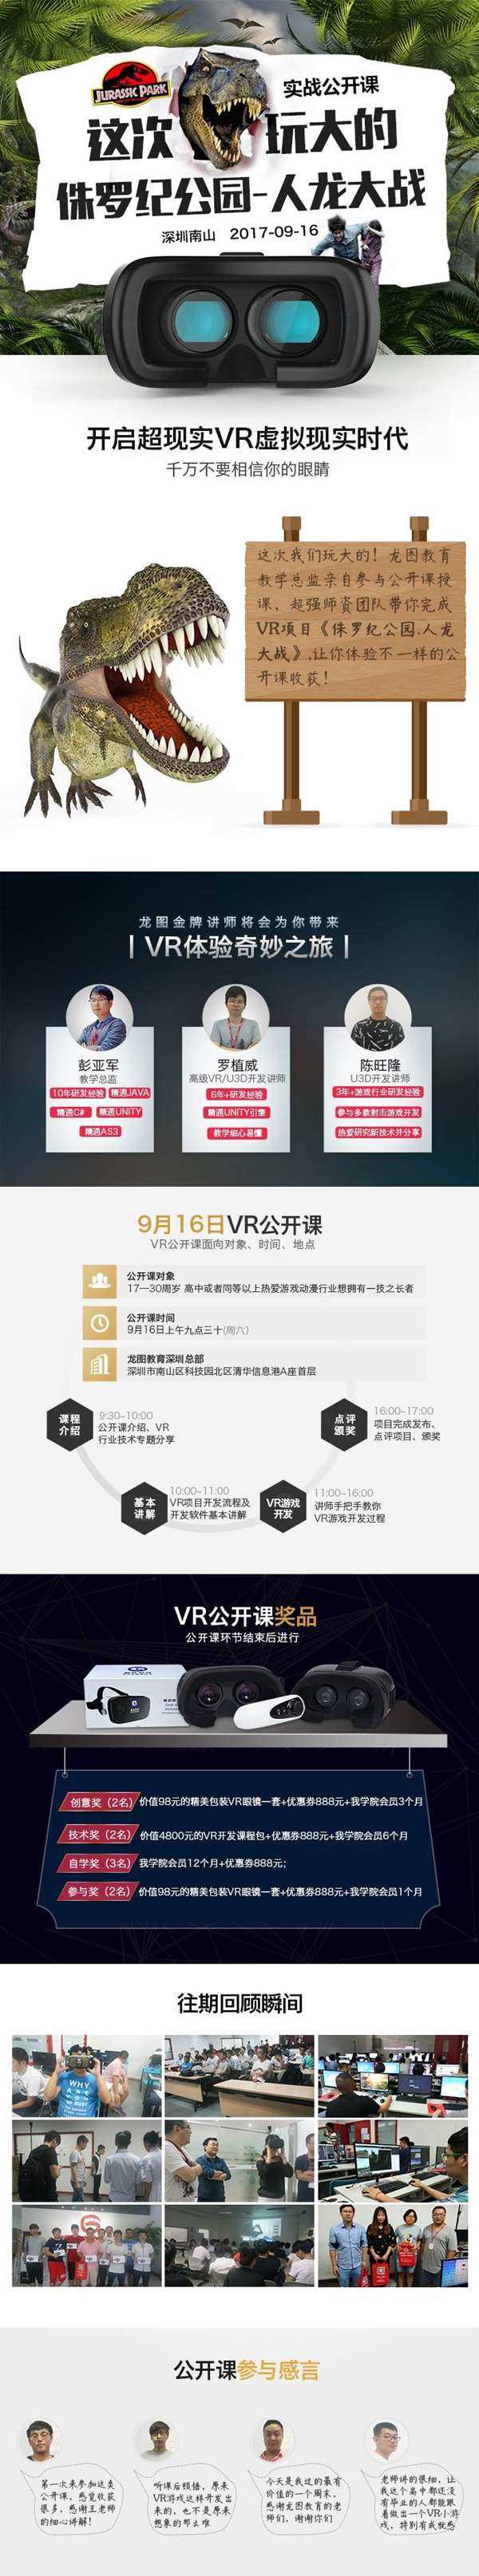 深圳南山VR体验公开课